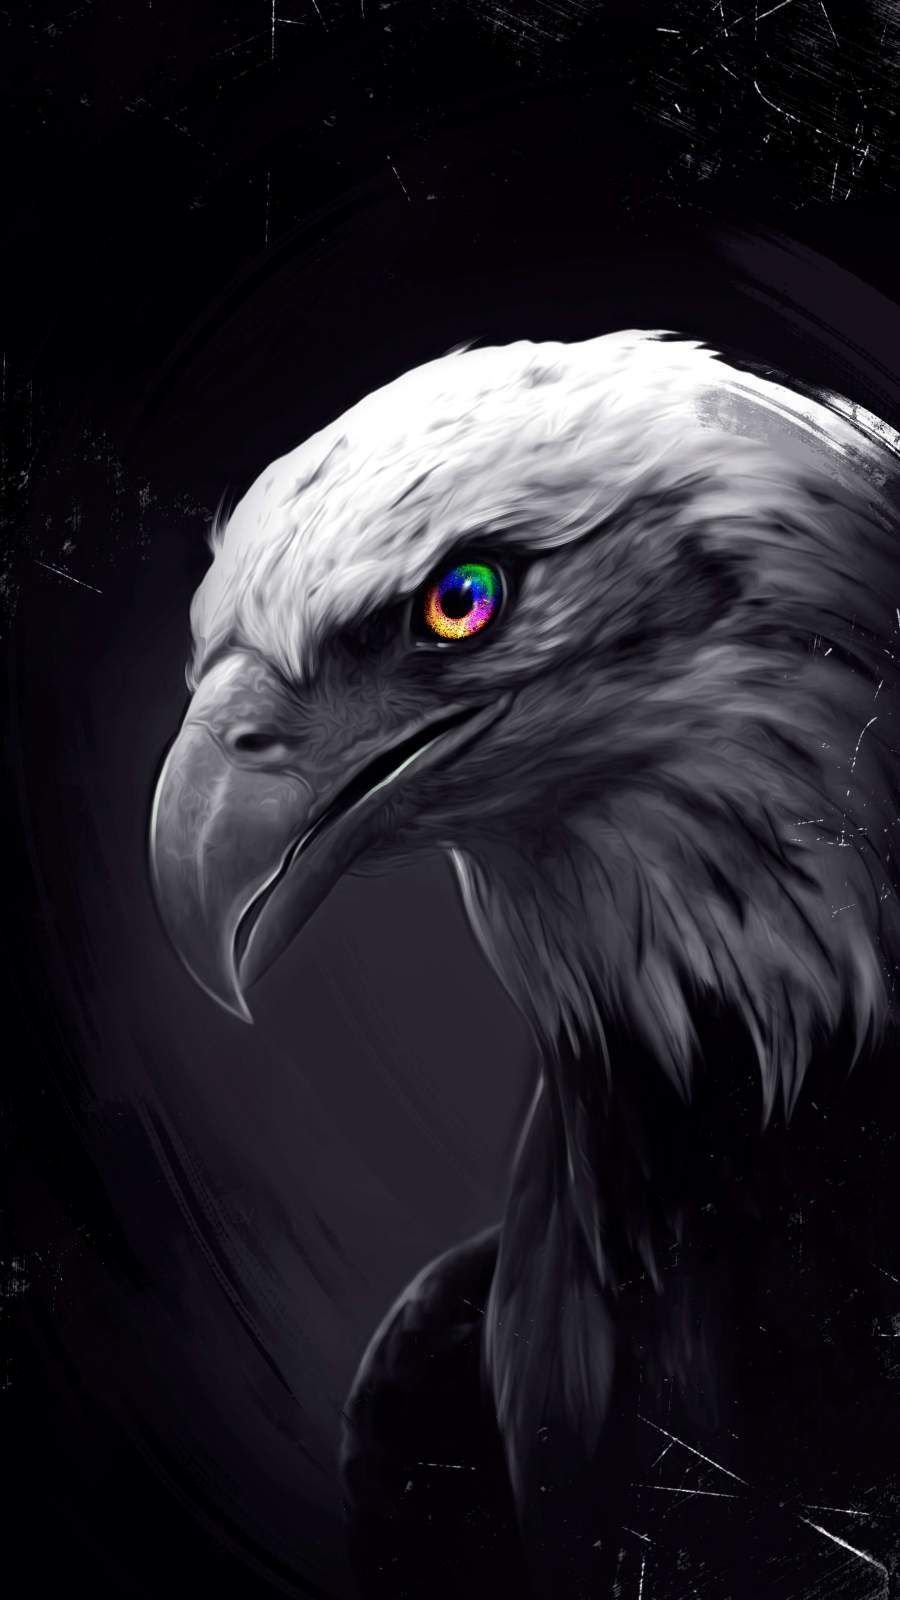 Evil eagle Wallpaper 4k Ultra HD ID11361